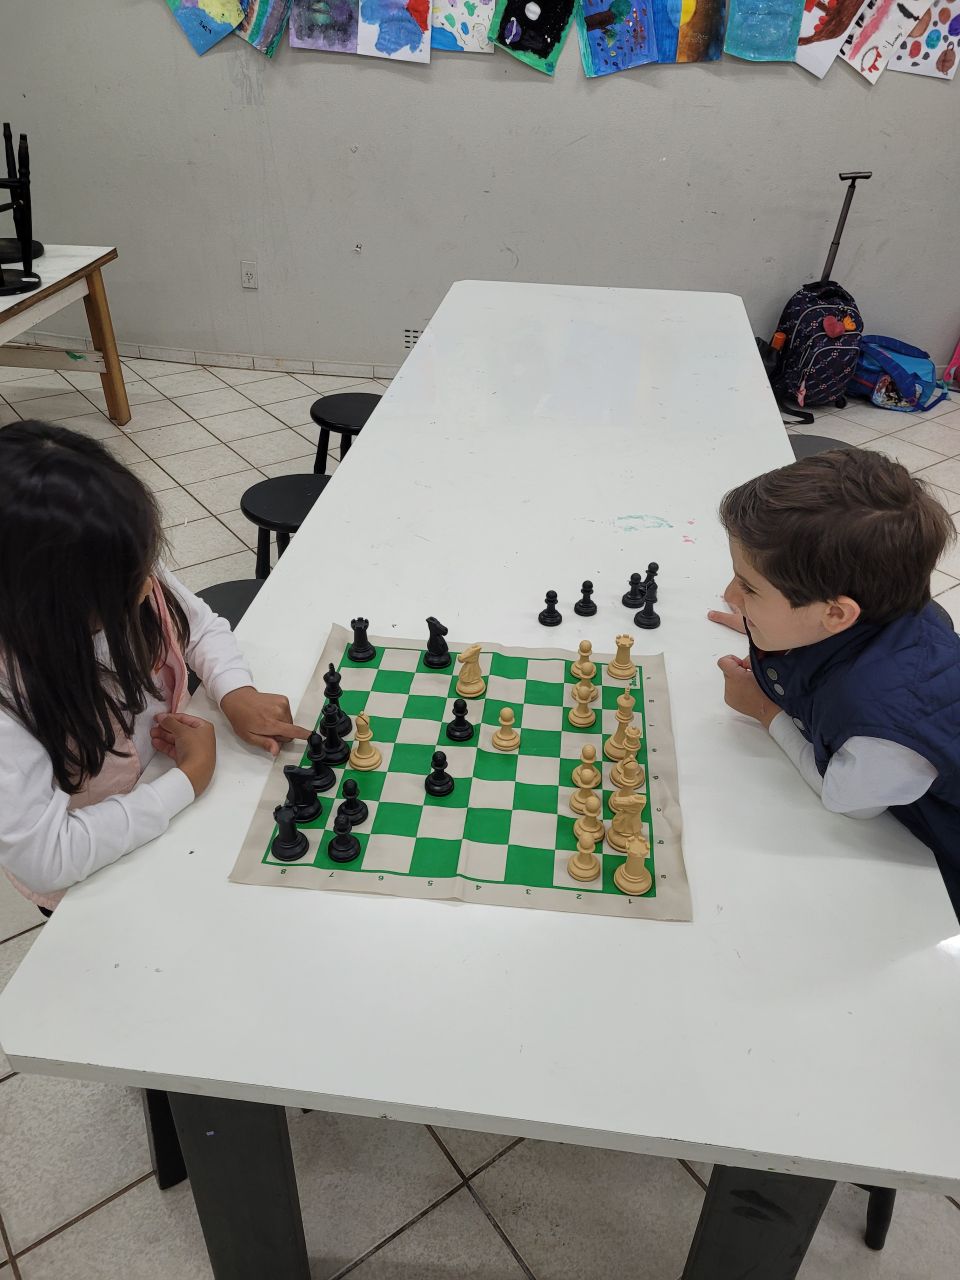 menino sério concentrado desenvolvendo gambito de xadrez, estratégia,  jogando jogo de tabuleiro para vencedor concentração inteligente e criança  pensante enquanto joga xadrez. conceito de aprendizagem, tática e análise.  7292816 Foto de stock